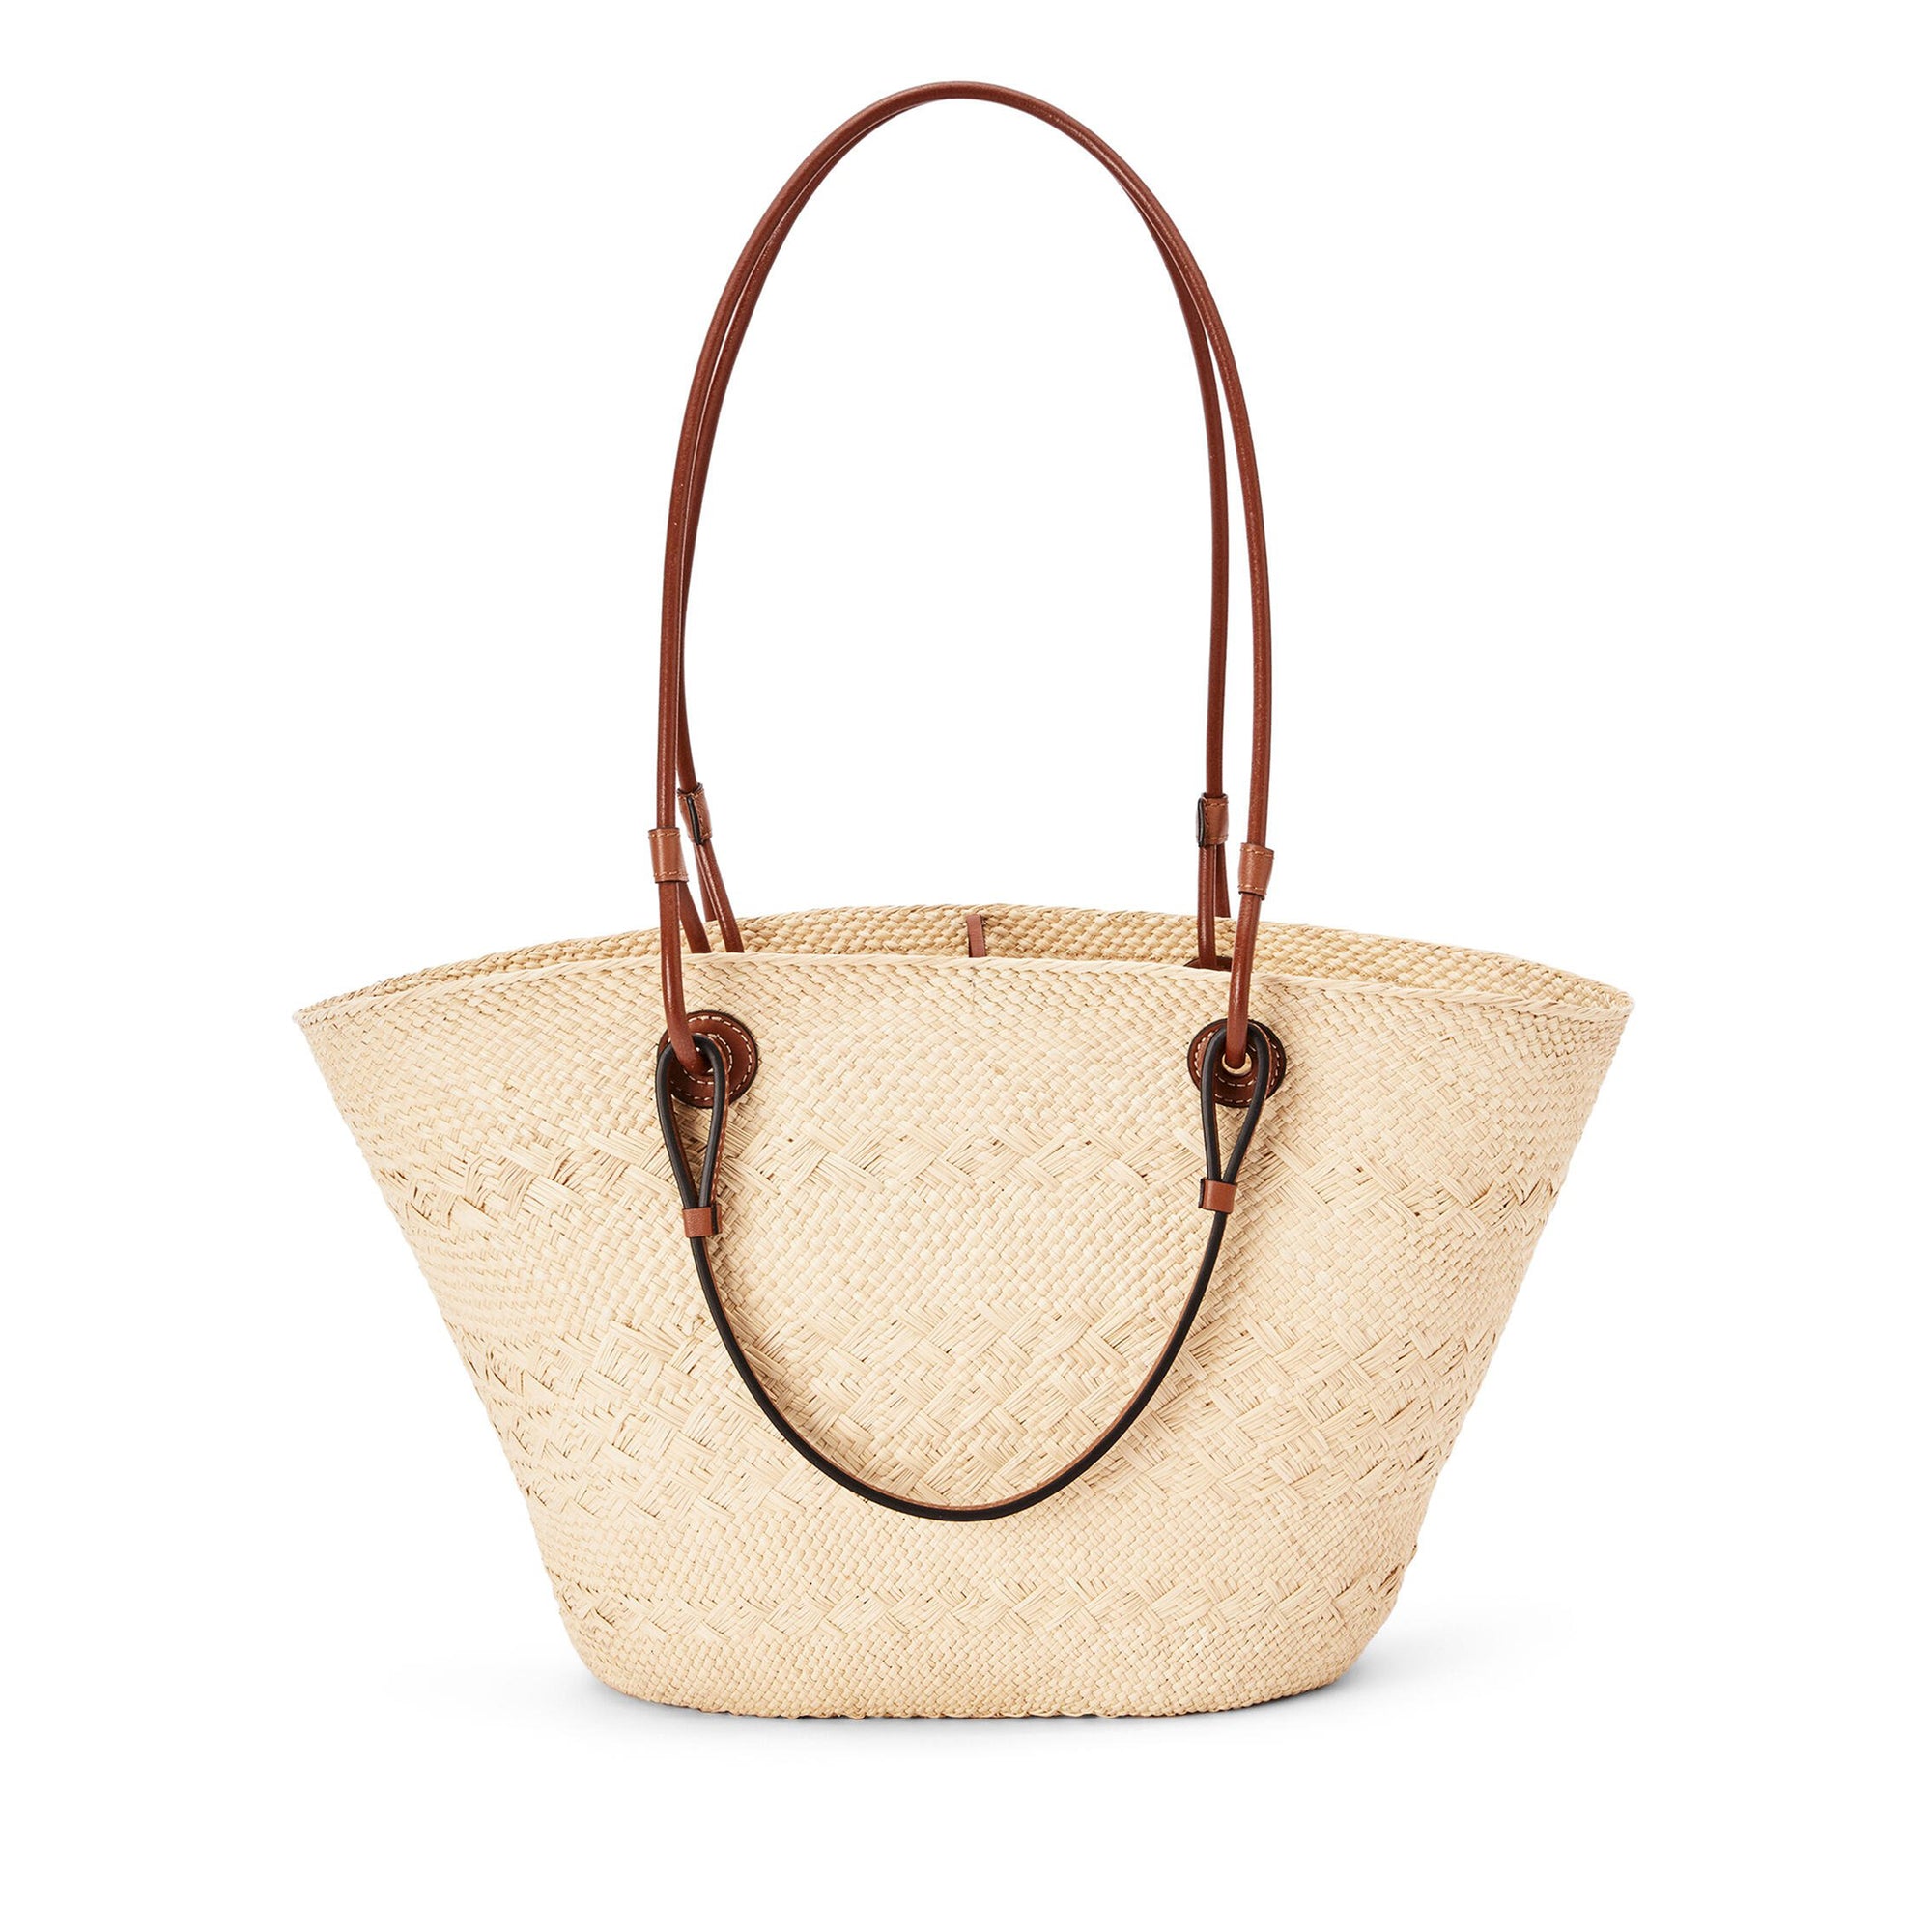 Loewe - Women’s Anagram Basket Bag - (Natural/Tan) view 3